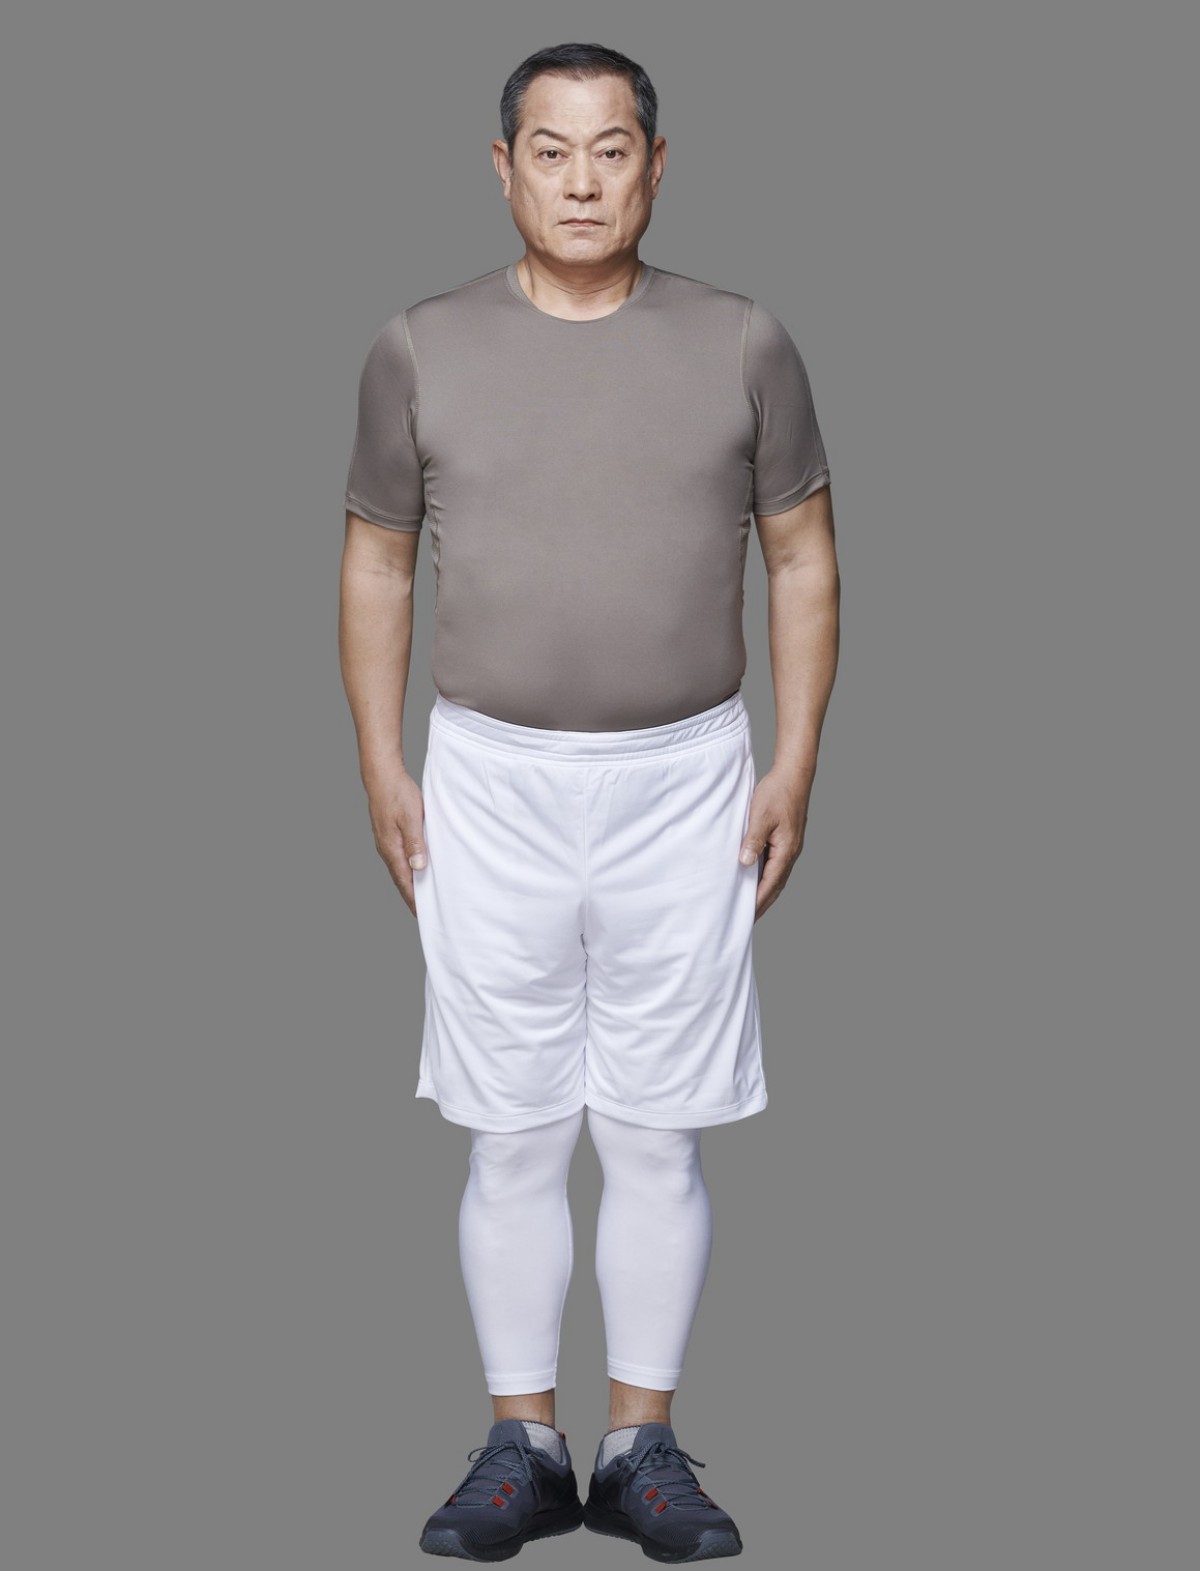 松平健66歳、ライザップで17.1kg減量　体力年齢が20代に「自分でもビックリ」